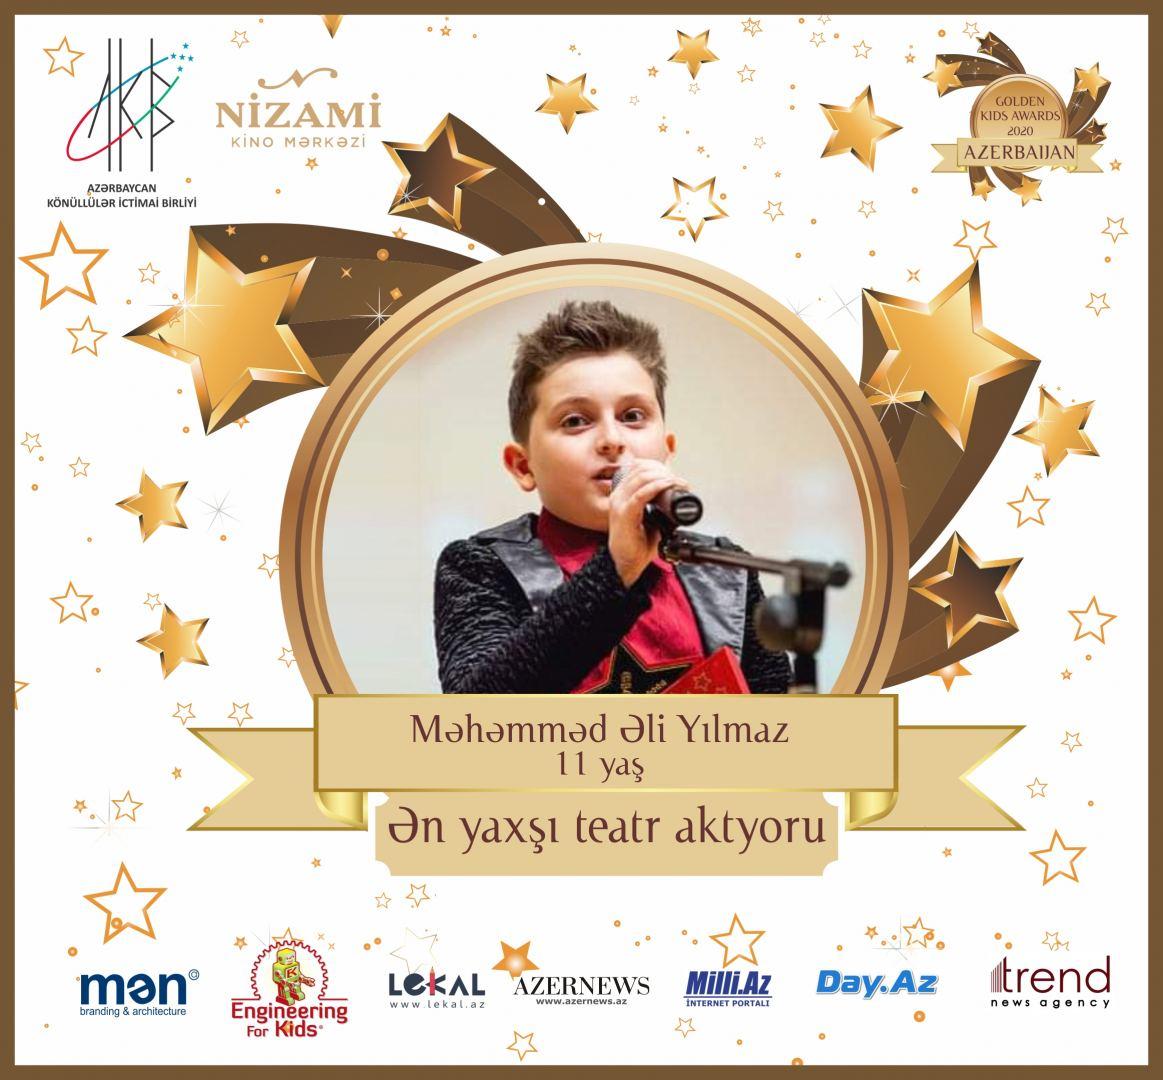 Церемония награждения Azerbaijan Golden Kids Awards 2020 пройдет в онлайн-формате